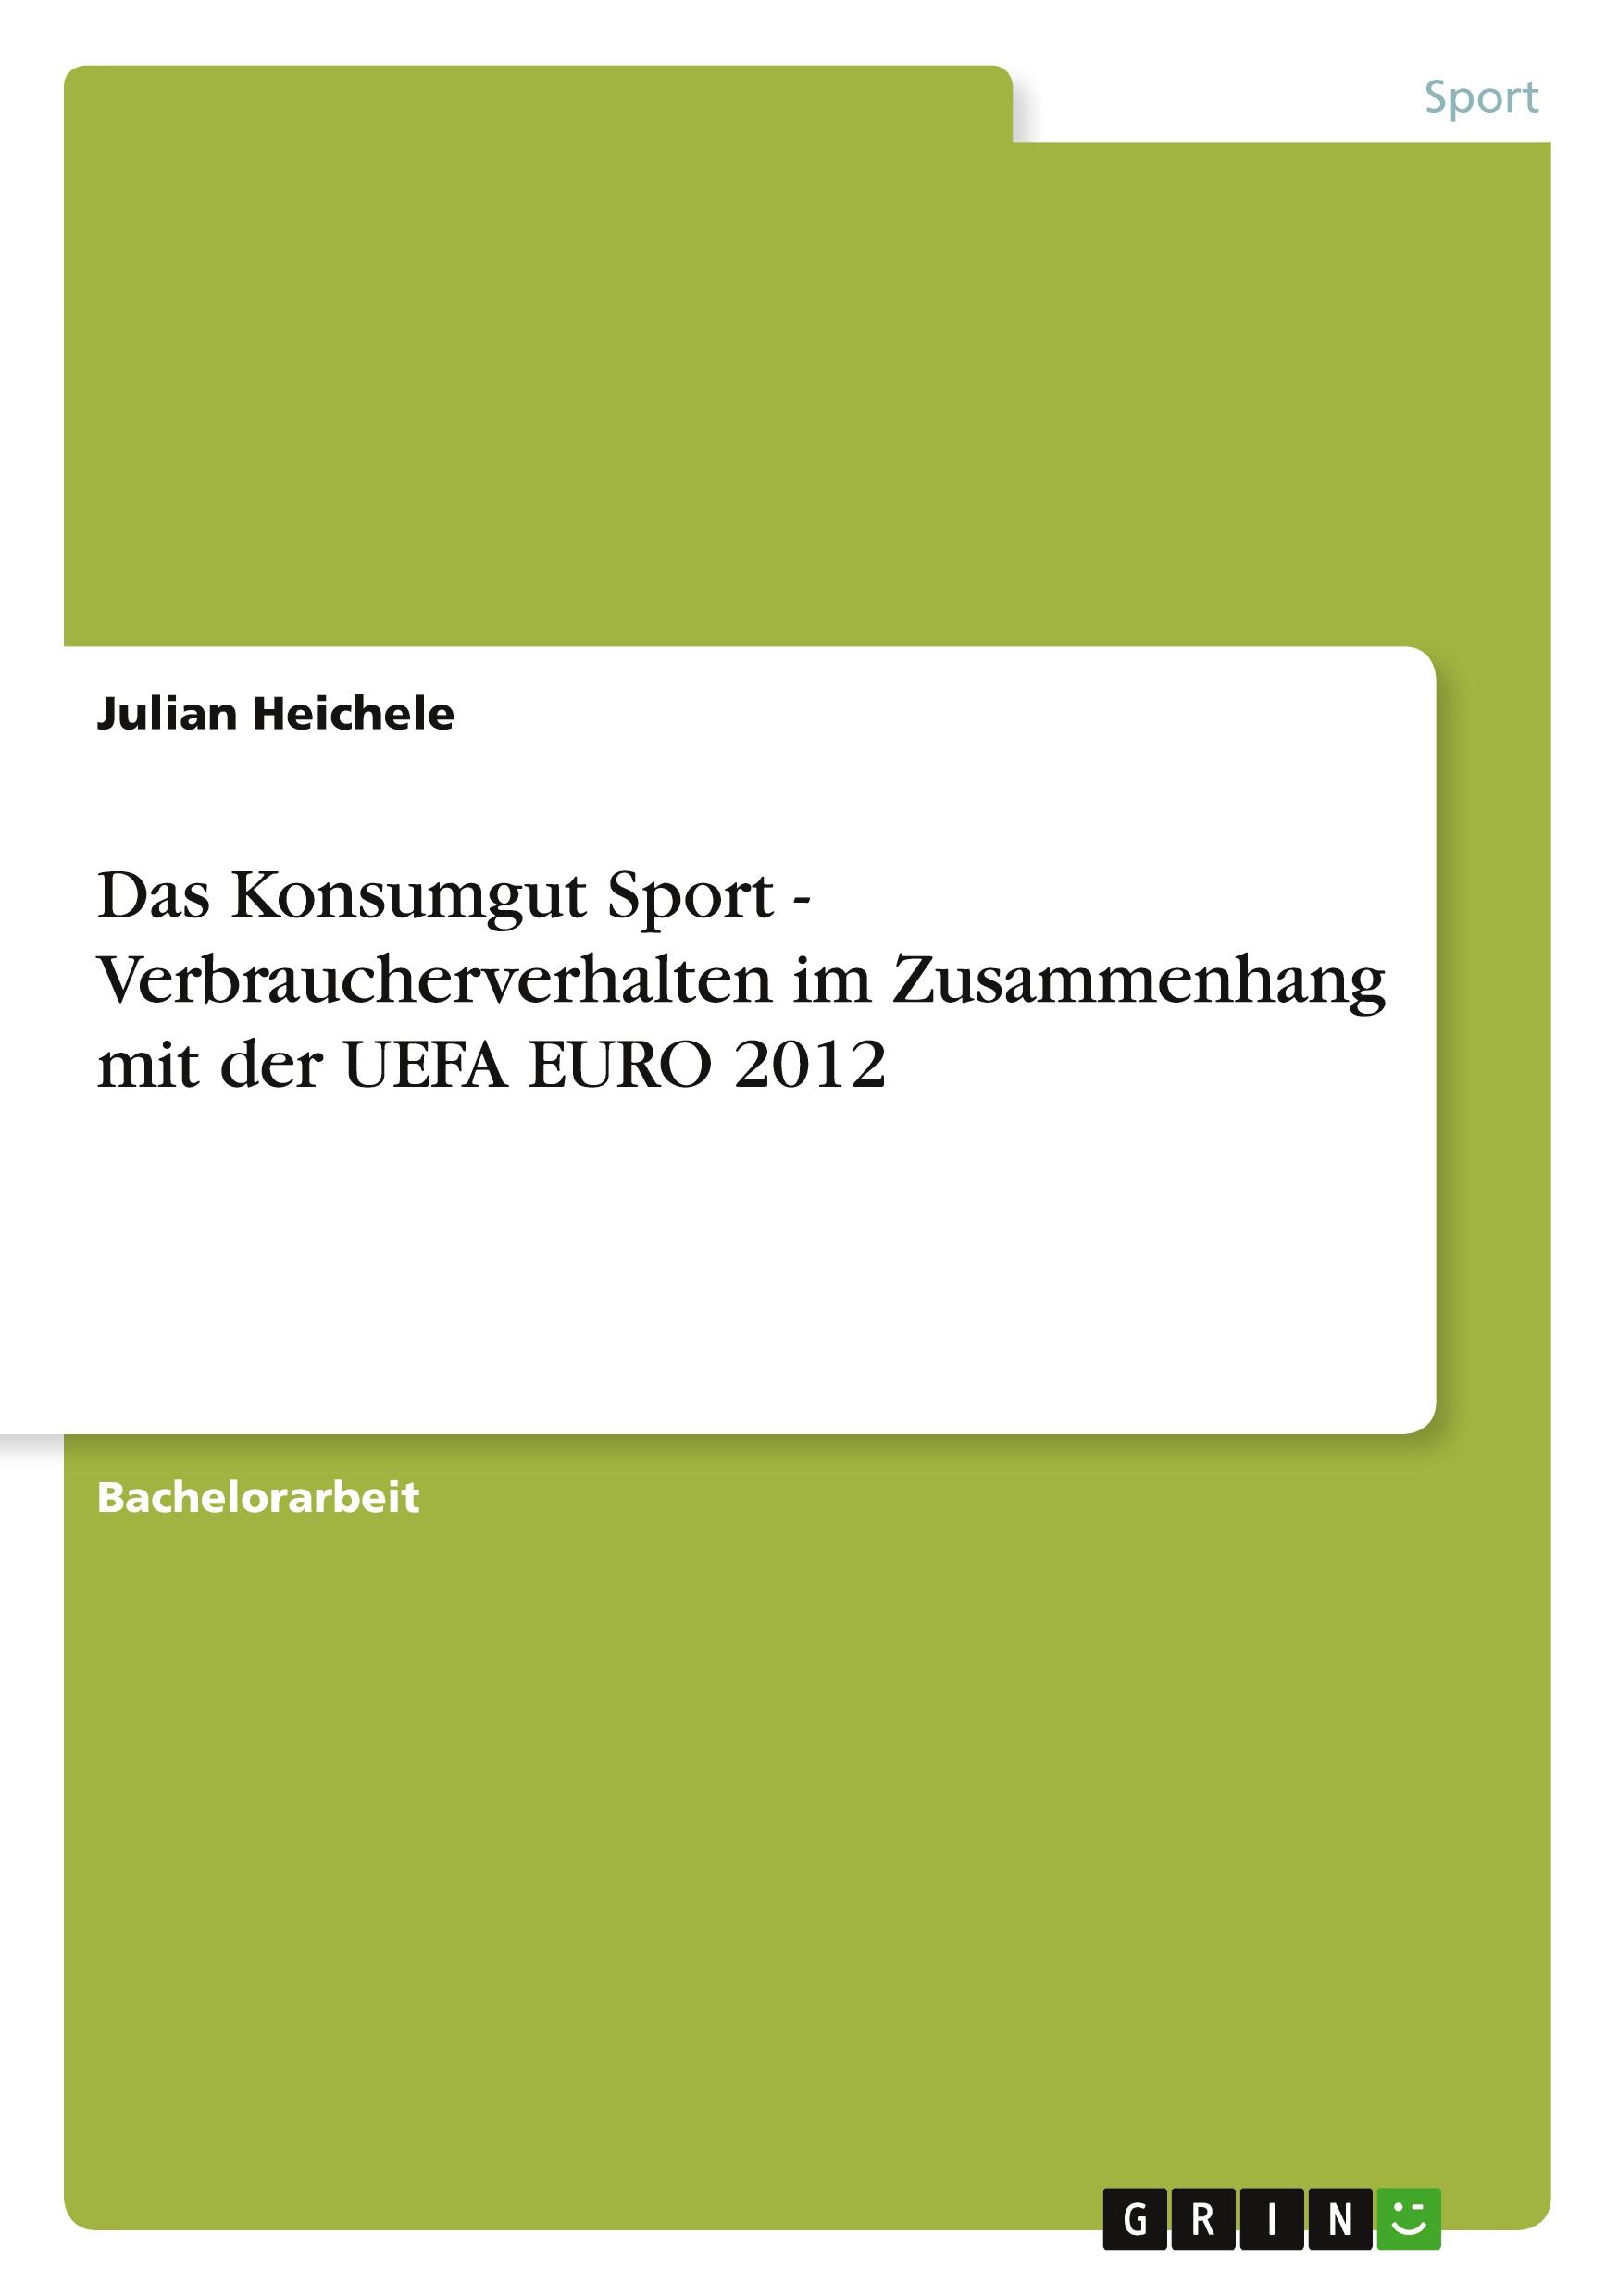 Das Konsumgut Sport - Verbraucherverhalten im Zusammenhang mit der UEFA EURO 2012 - Heichele, Julian